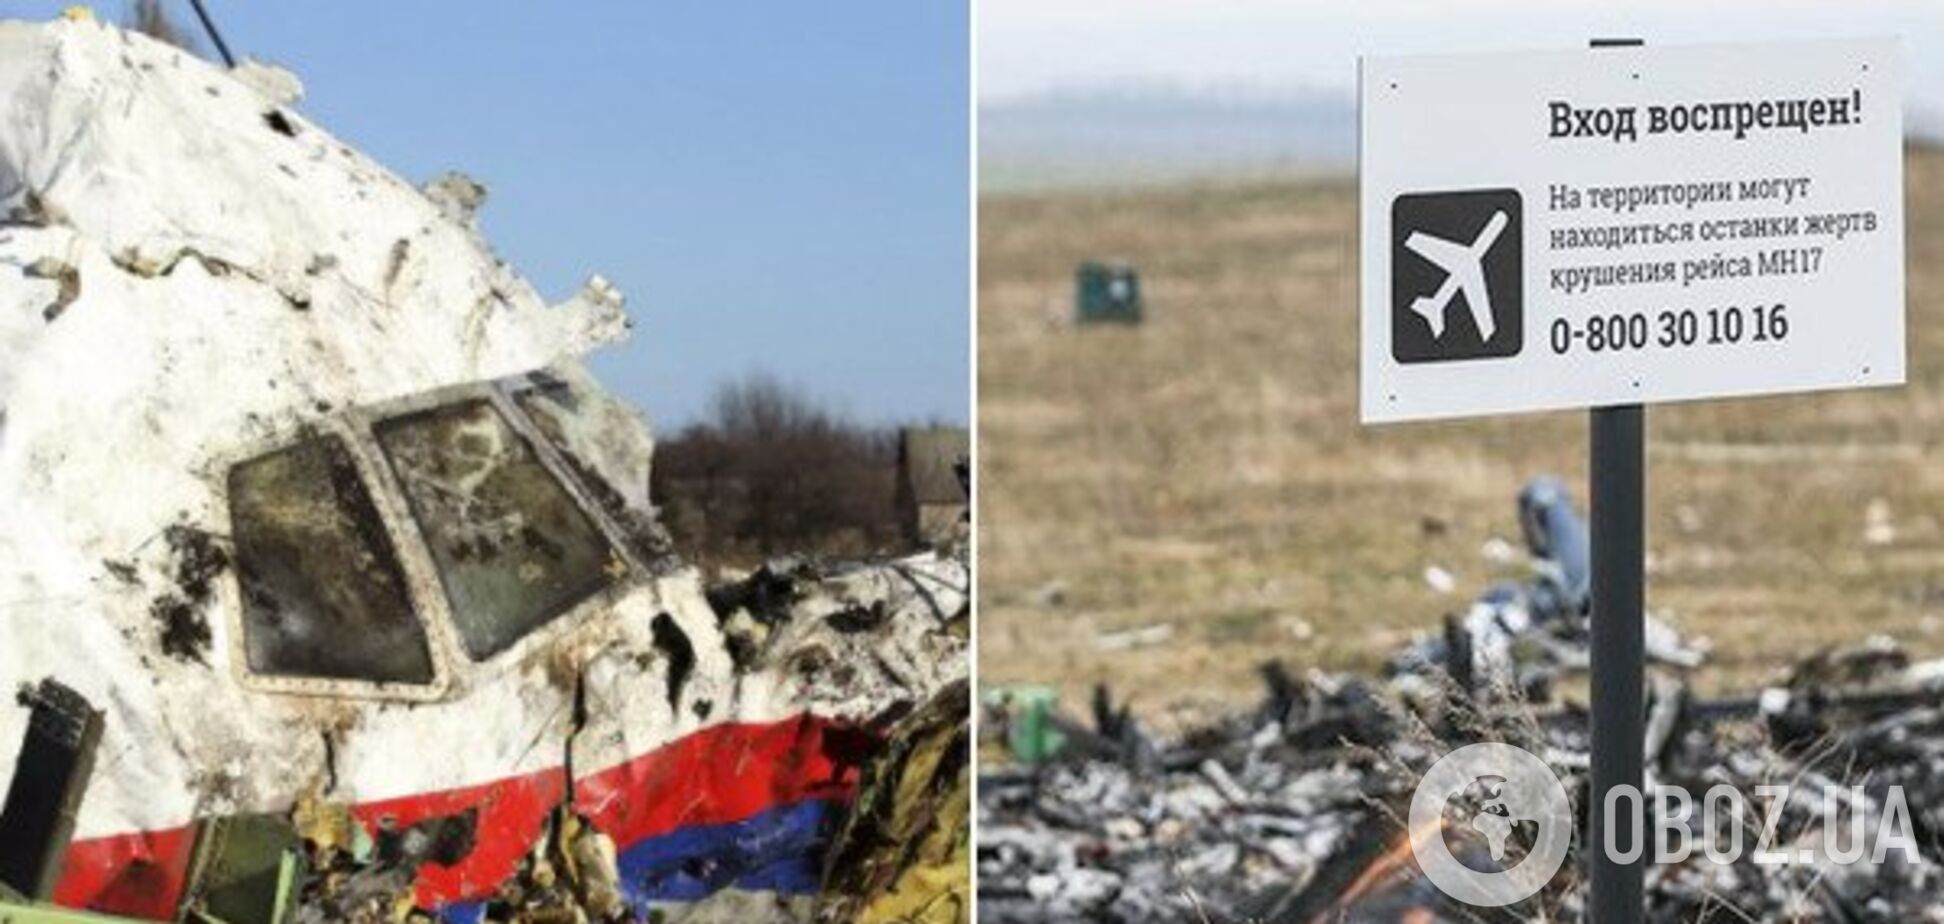 Катастрофа MH17 закончится судом: дата и детали